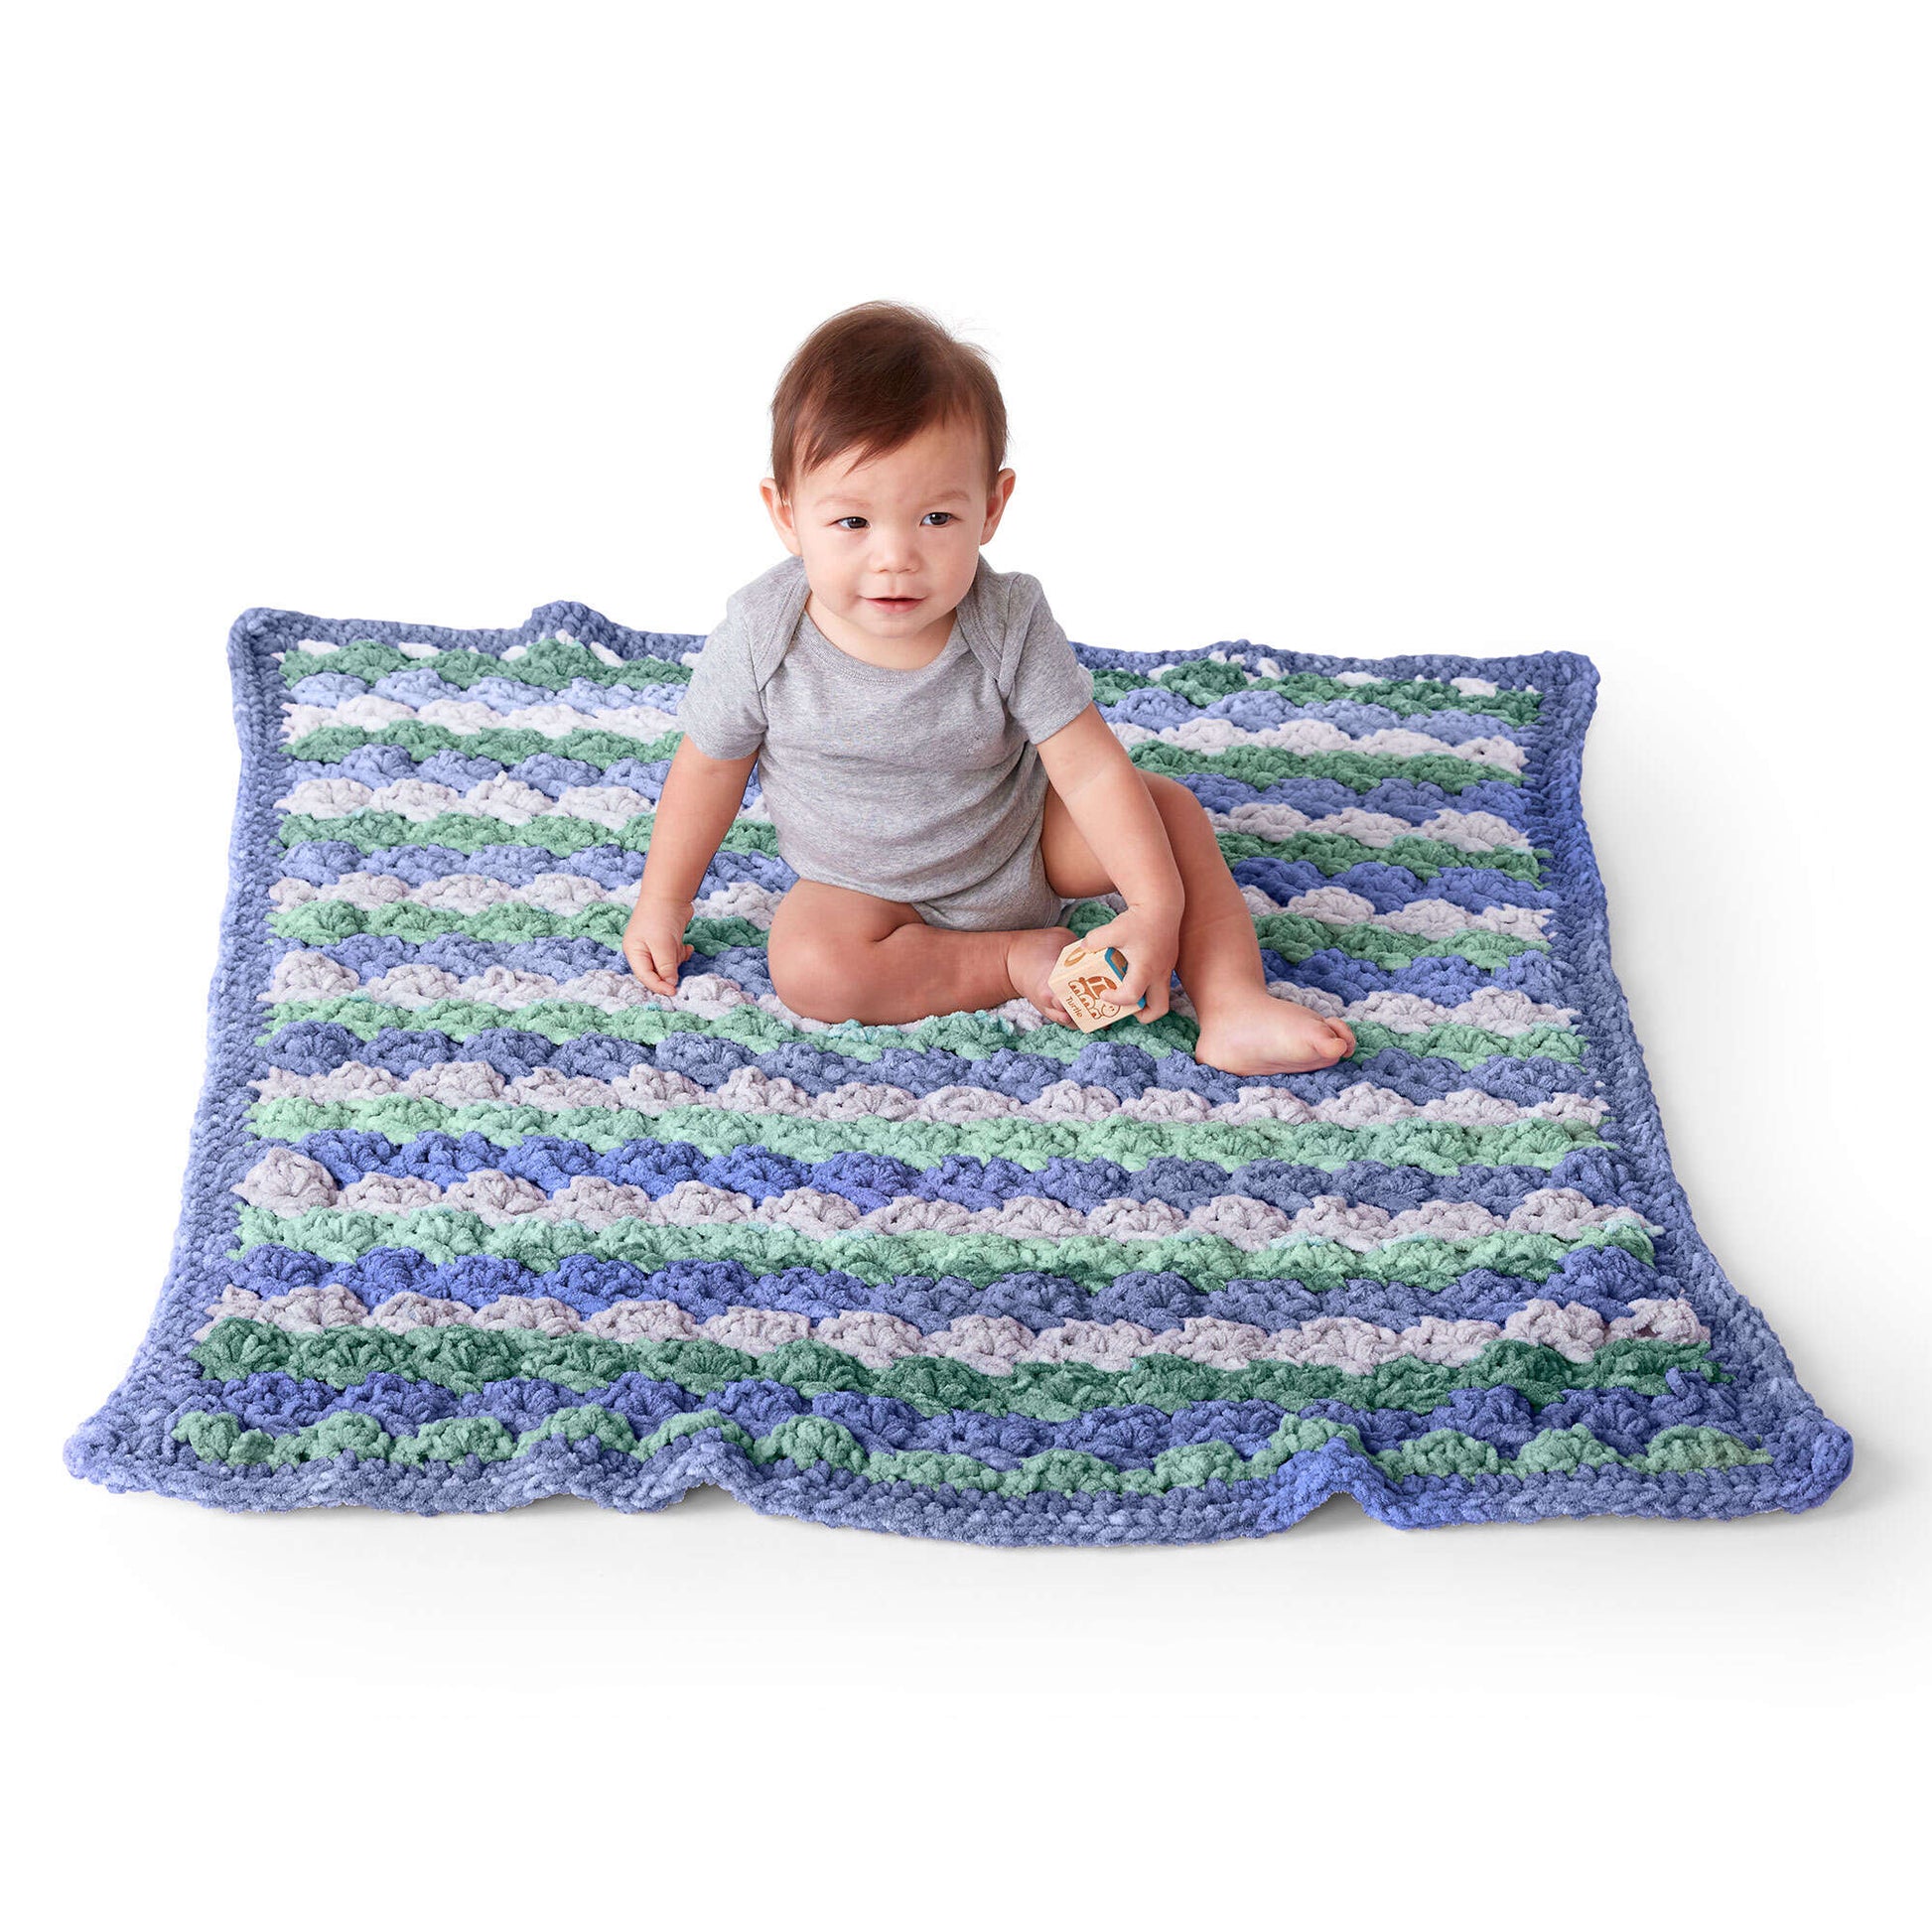 Free Bernat Tippy Toes Crochet Blanket Pattern